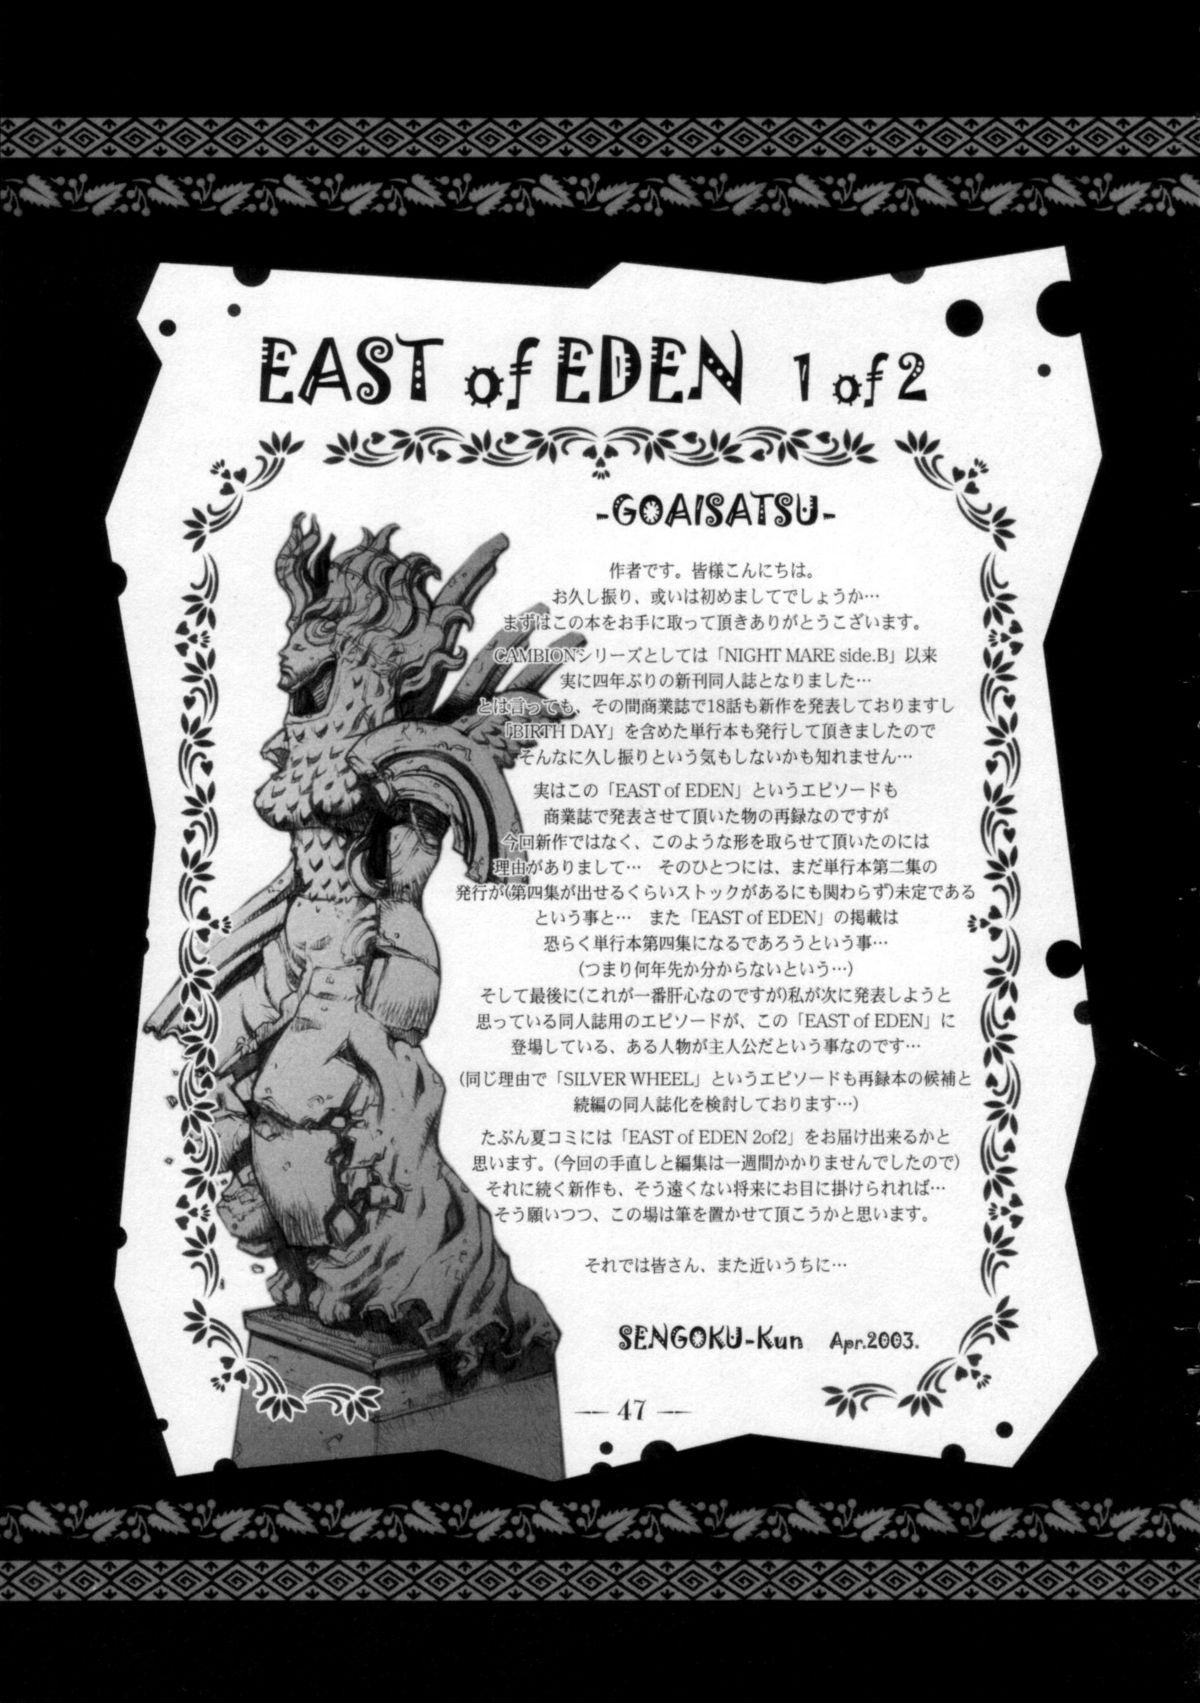 East of Eden 1 of 2 45